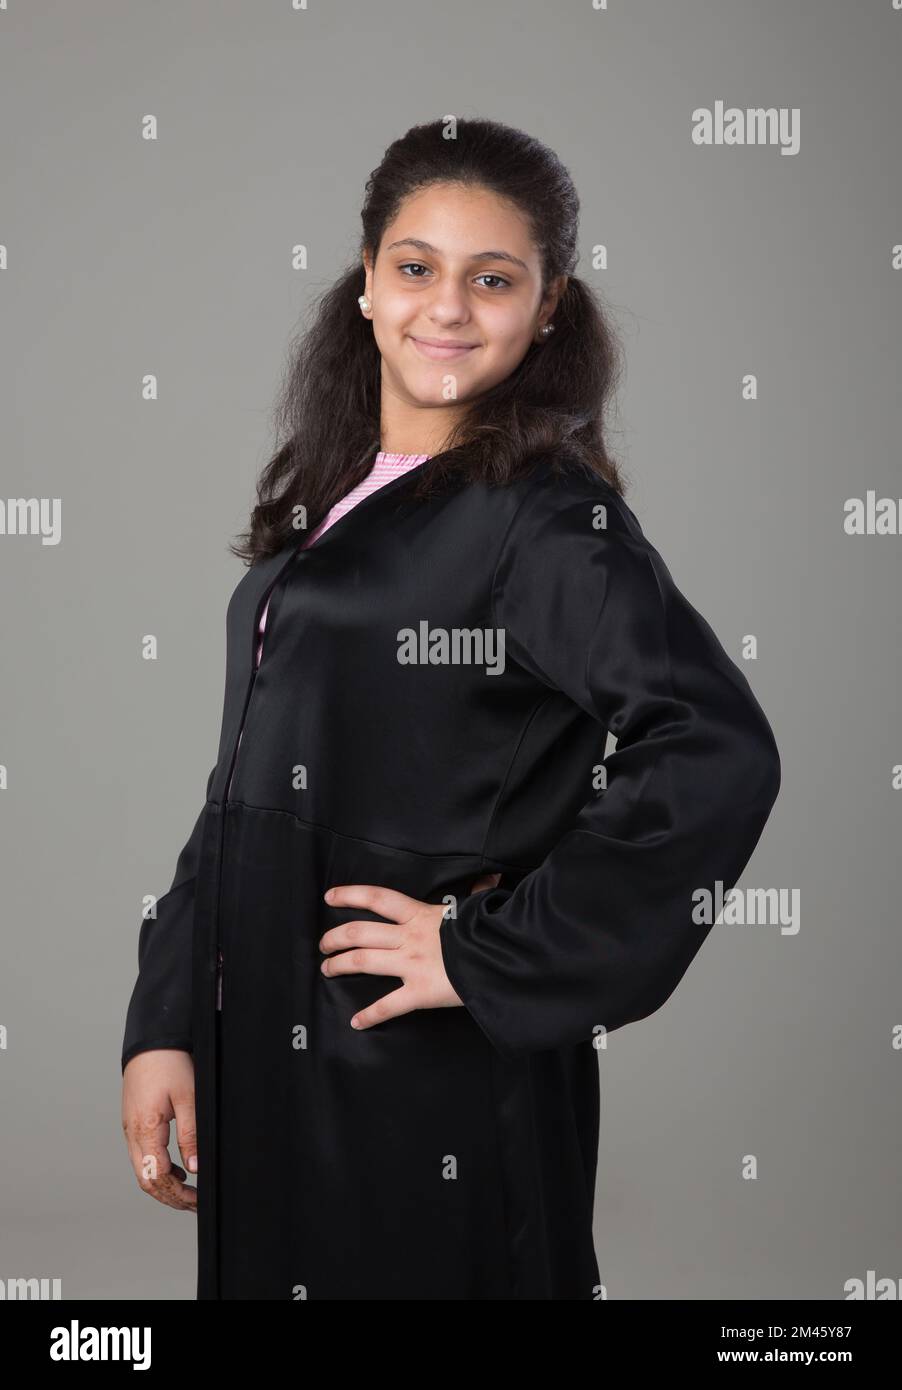 Porträt eines arabischen Mädchens. Stockfoto